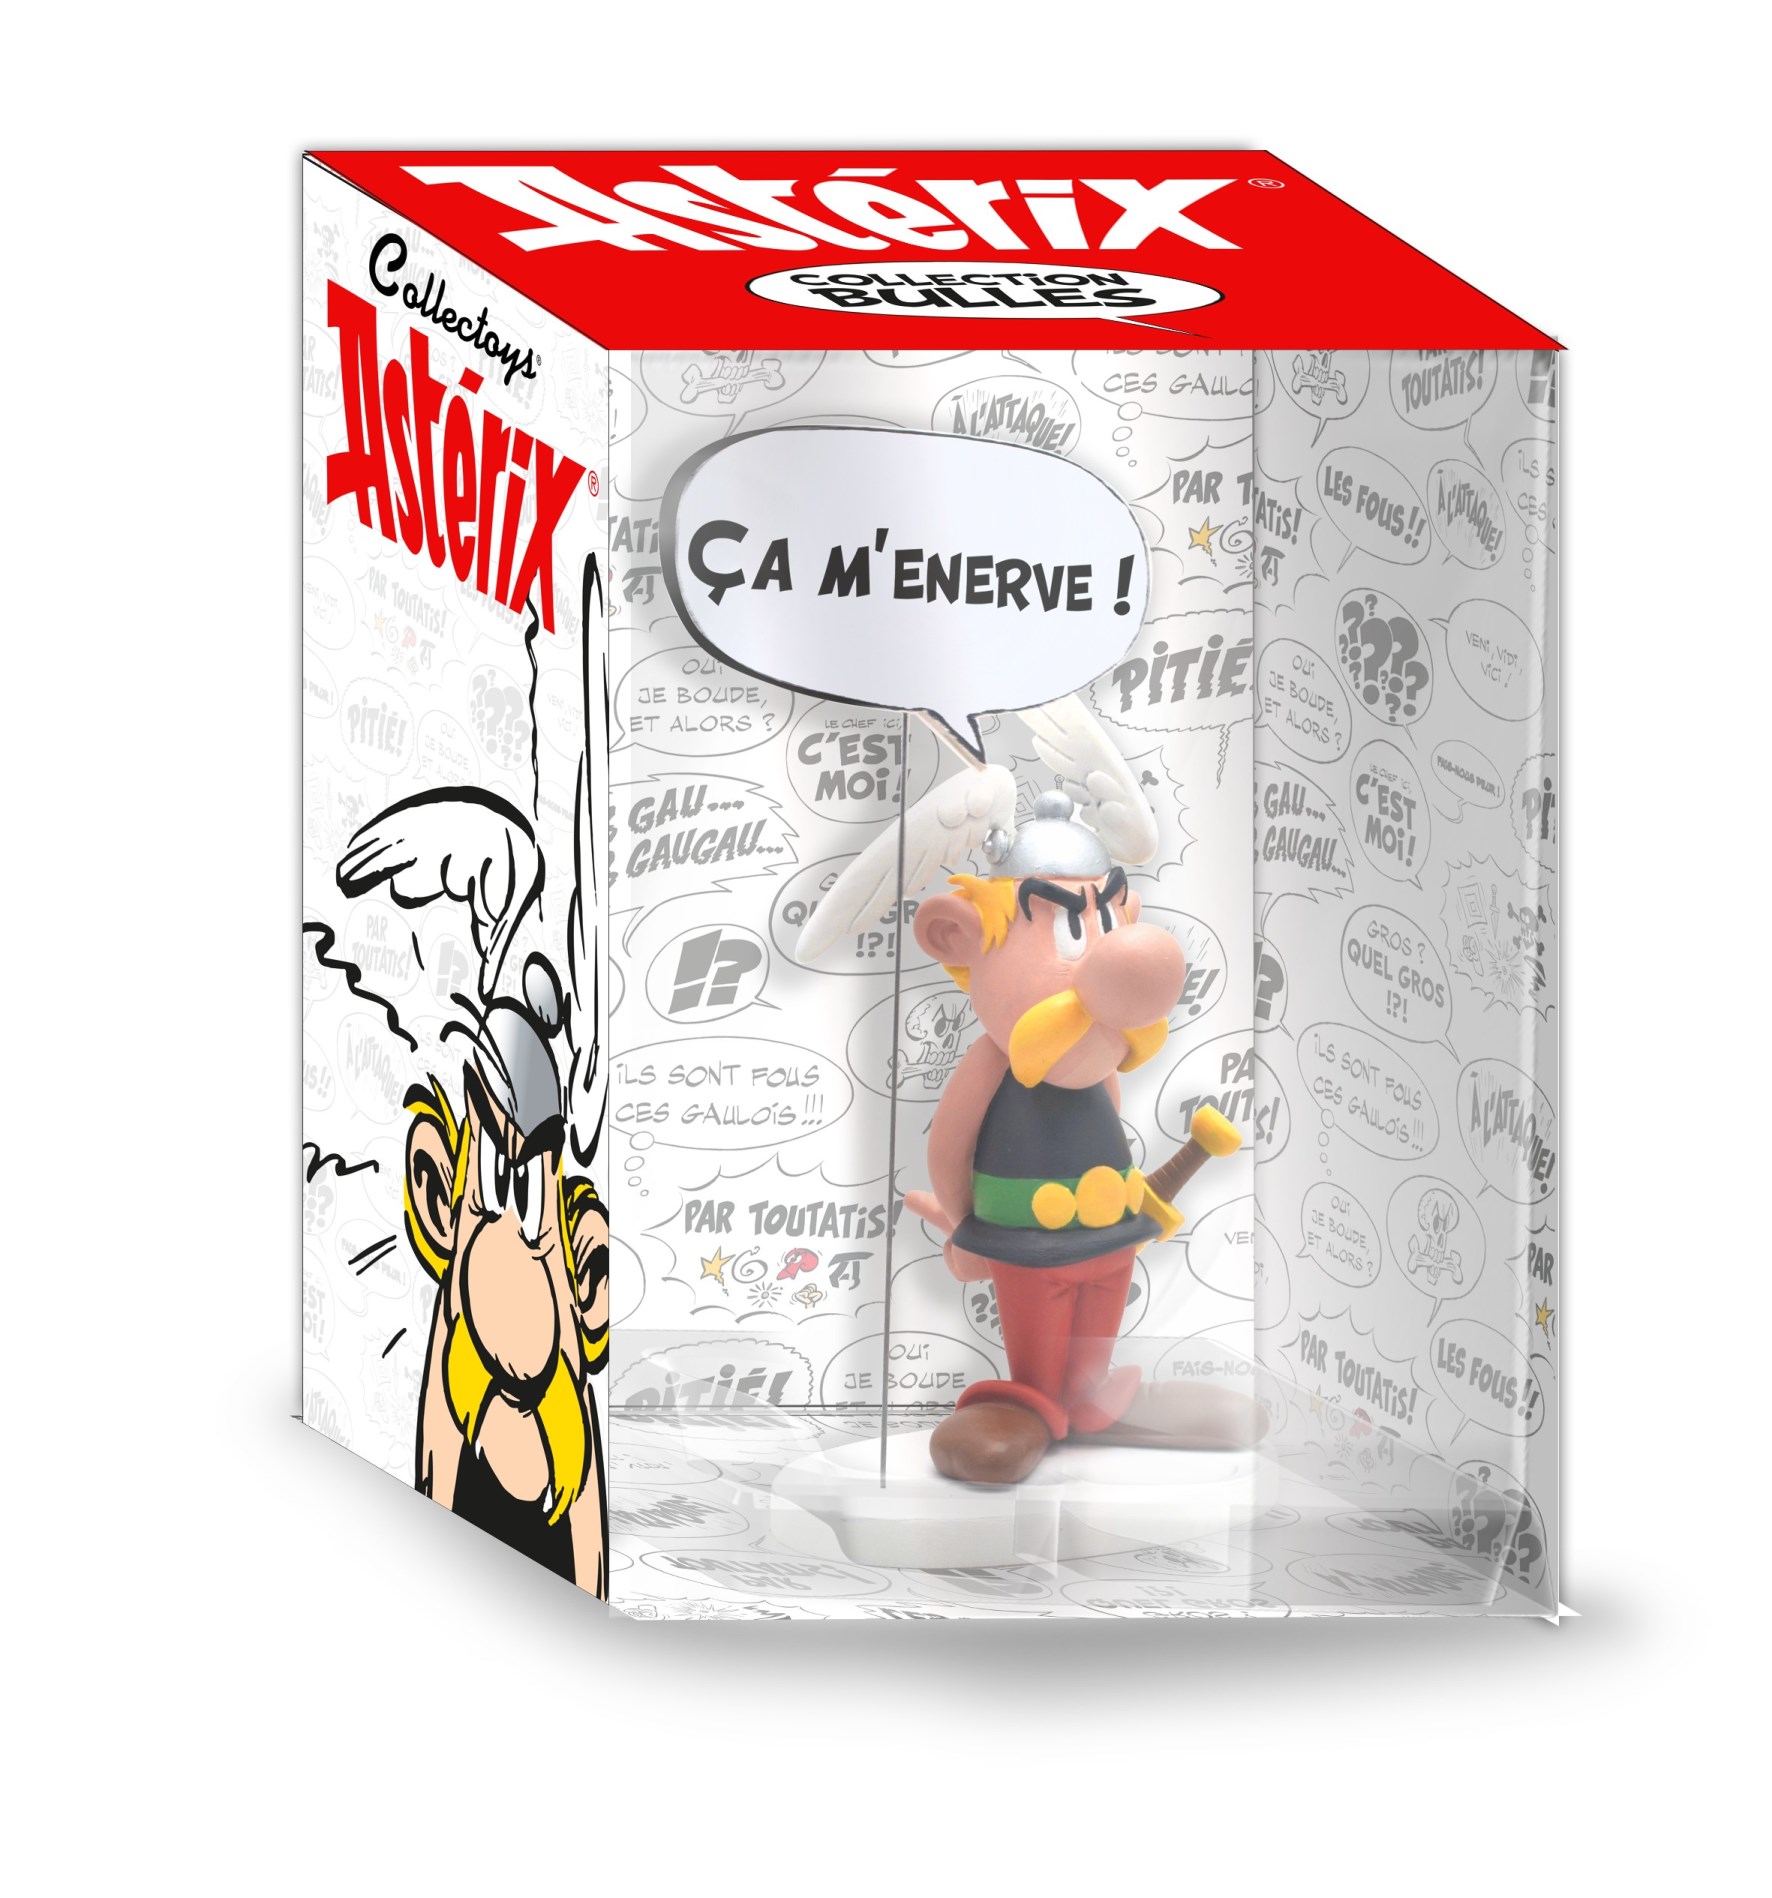 Asterix - 